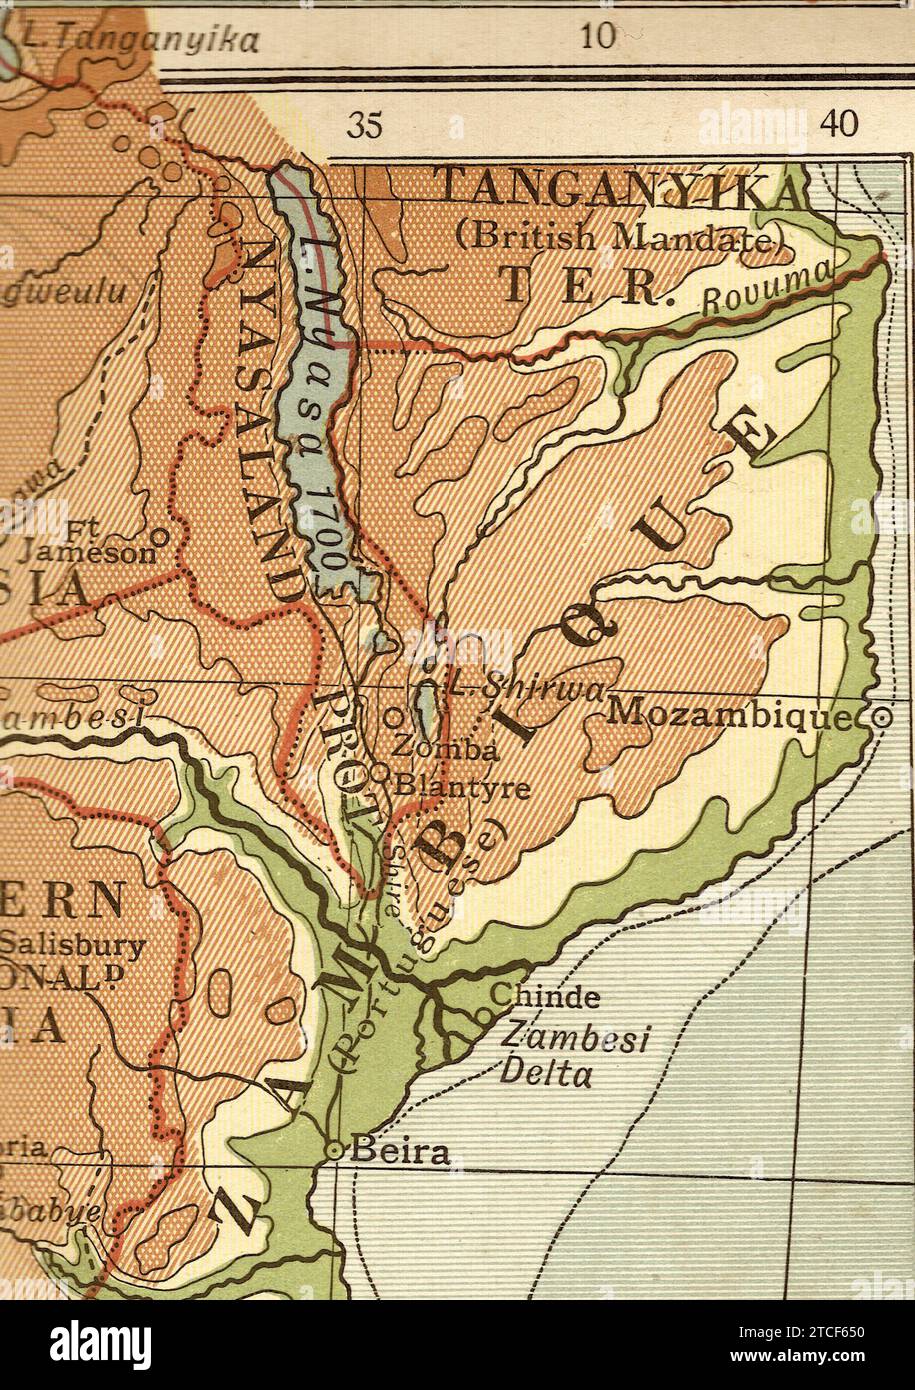 Une carte géographique vintage/antique de l'Afrique en sépia montrant le nord du Mozambique. Banque D'Images